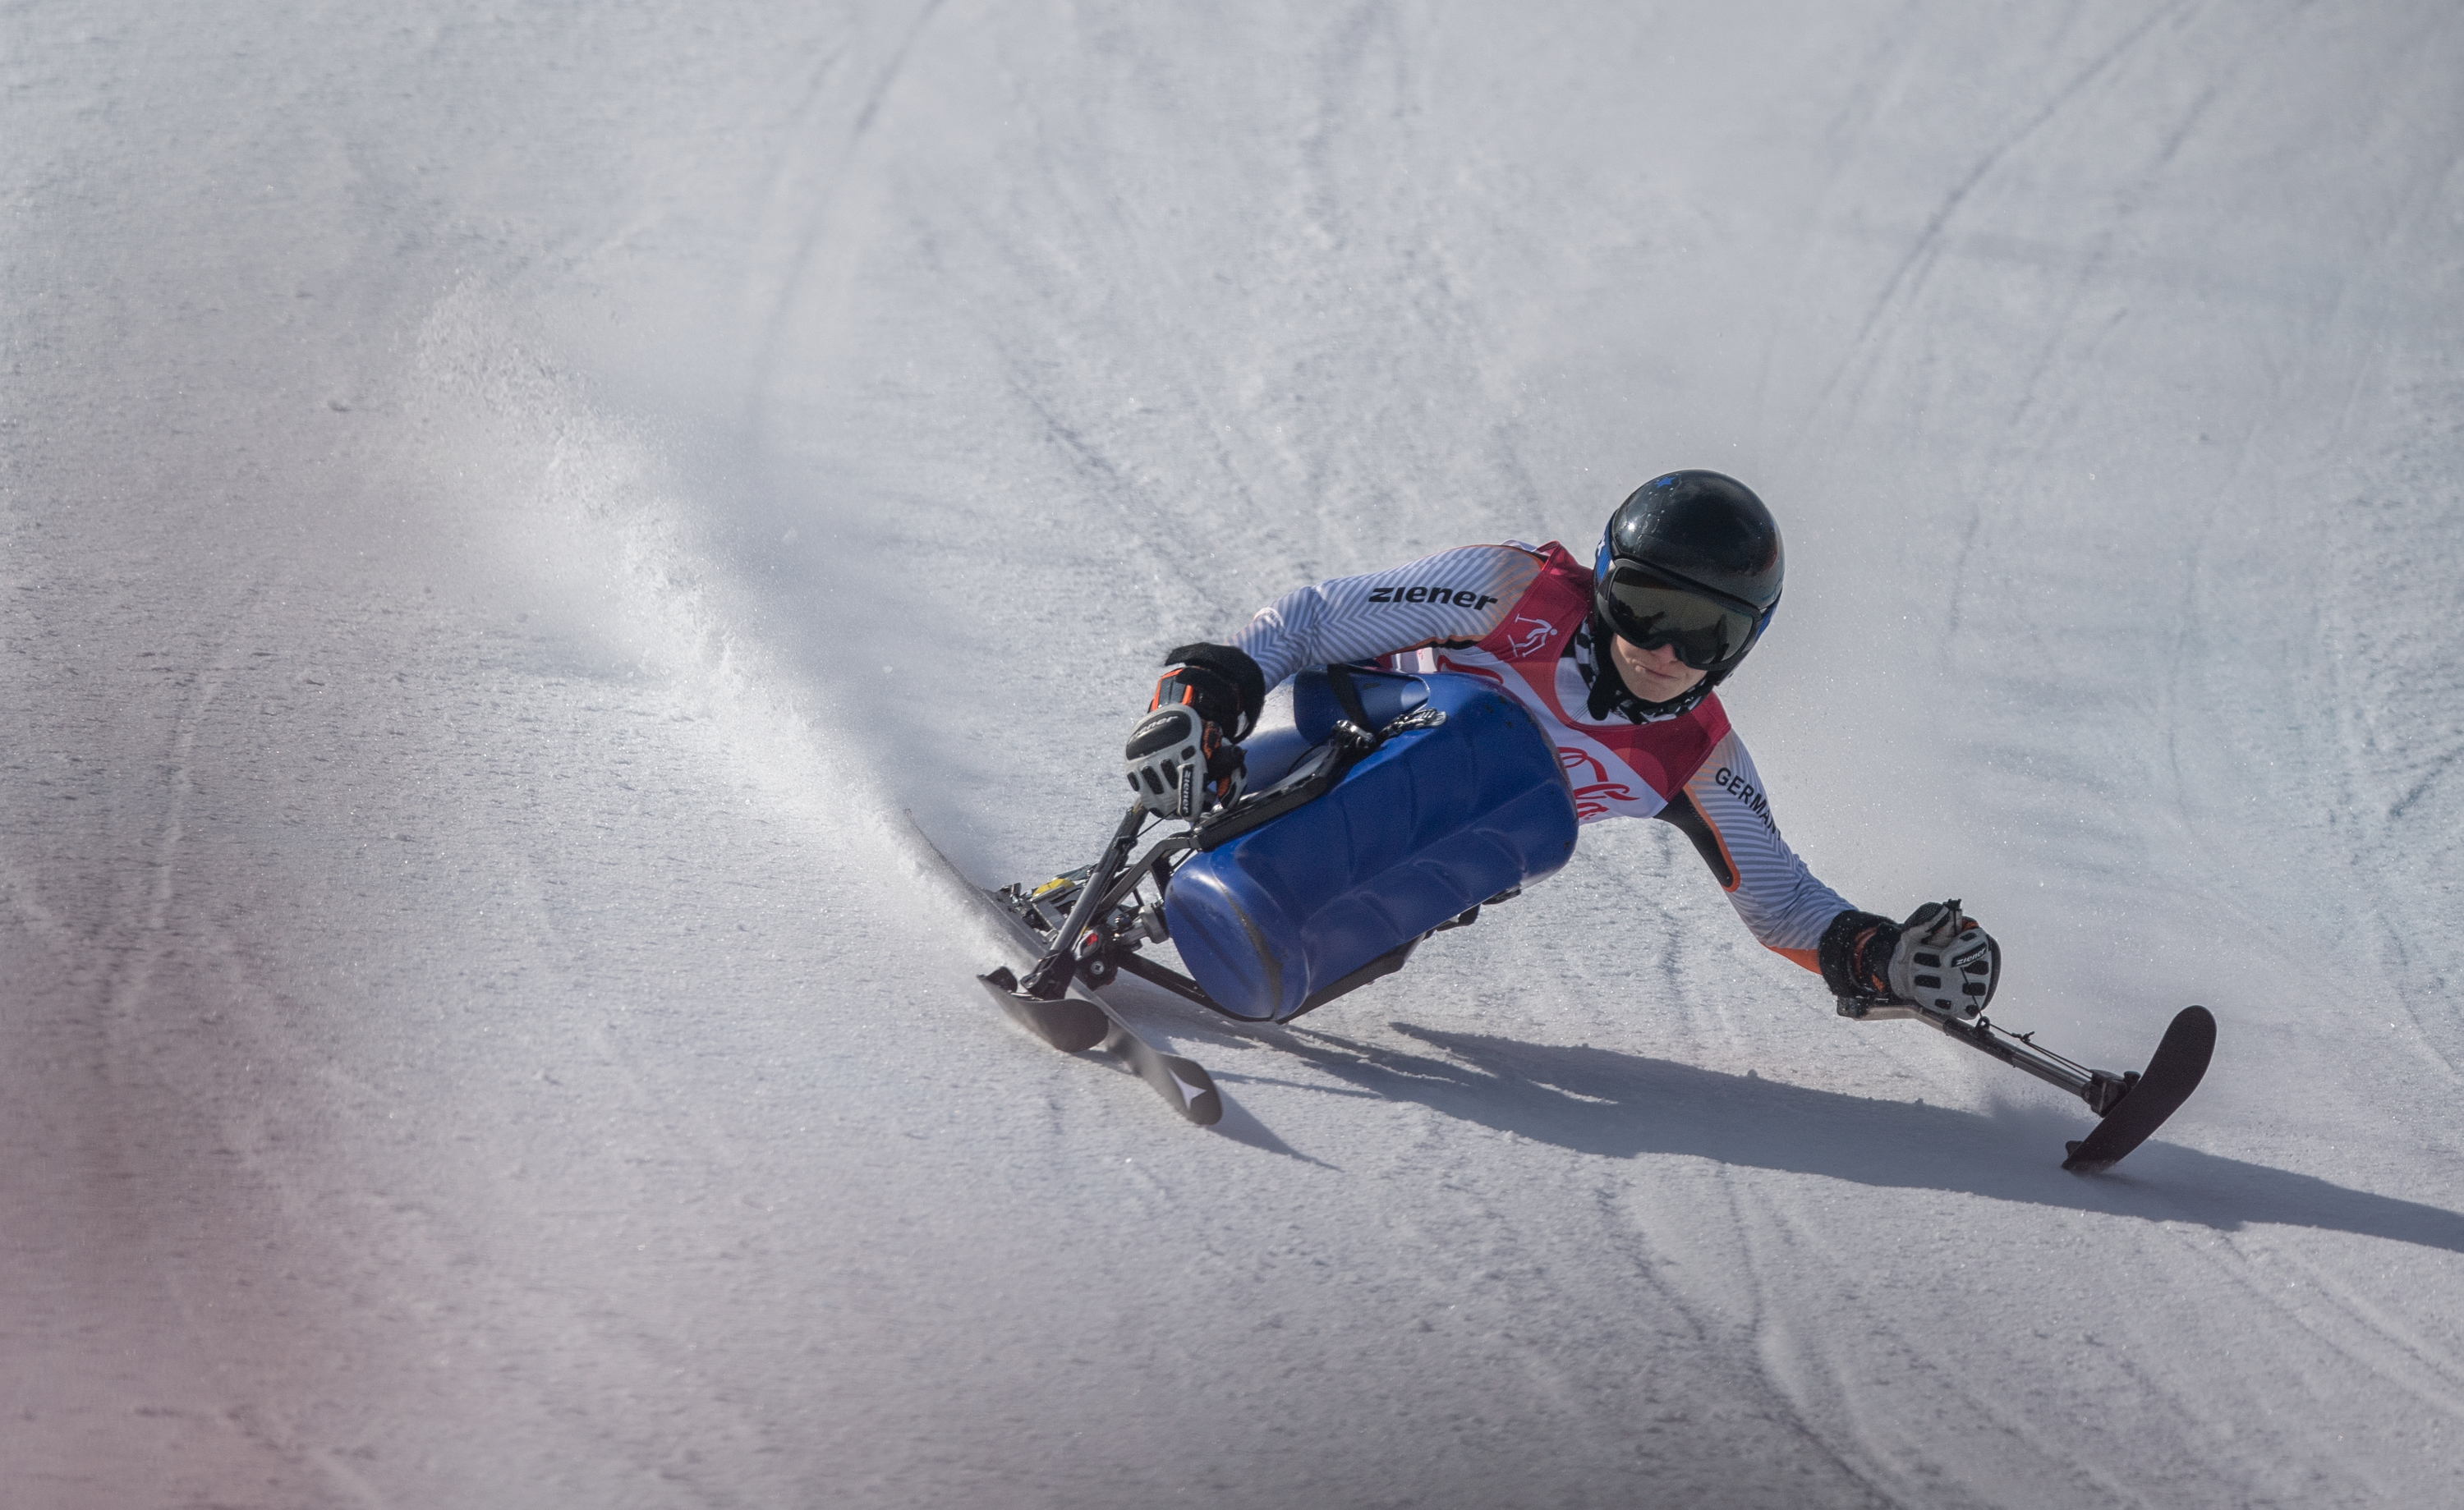 Medaillen-Auftakt für die Bayerischen Para Ski Alpin Athletinnen in Kranjska Gora.